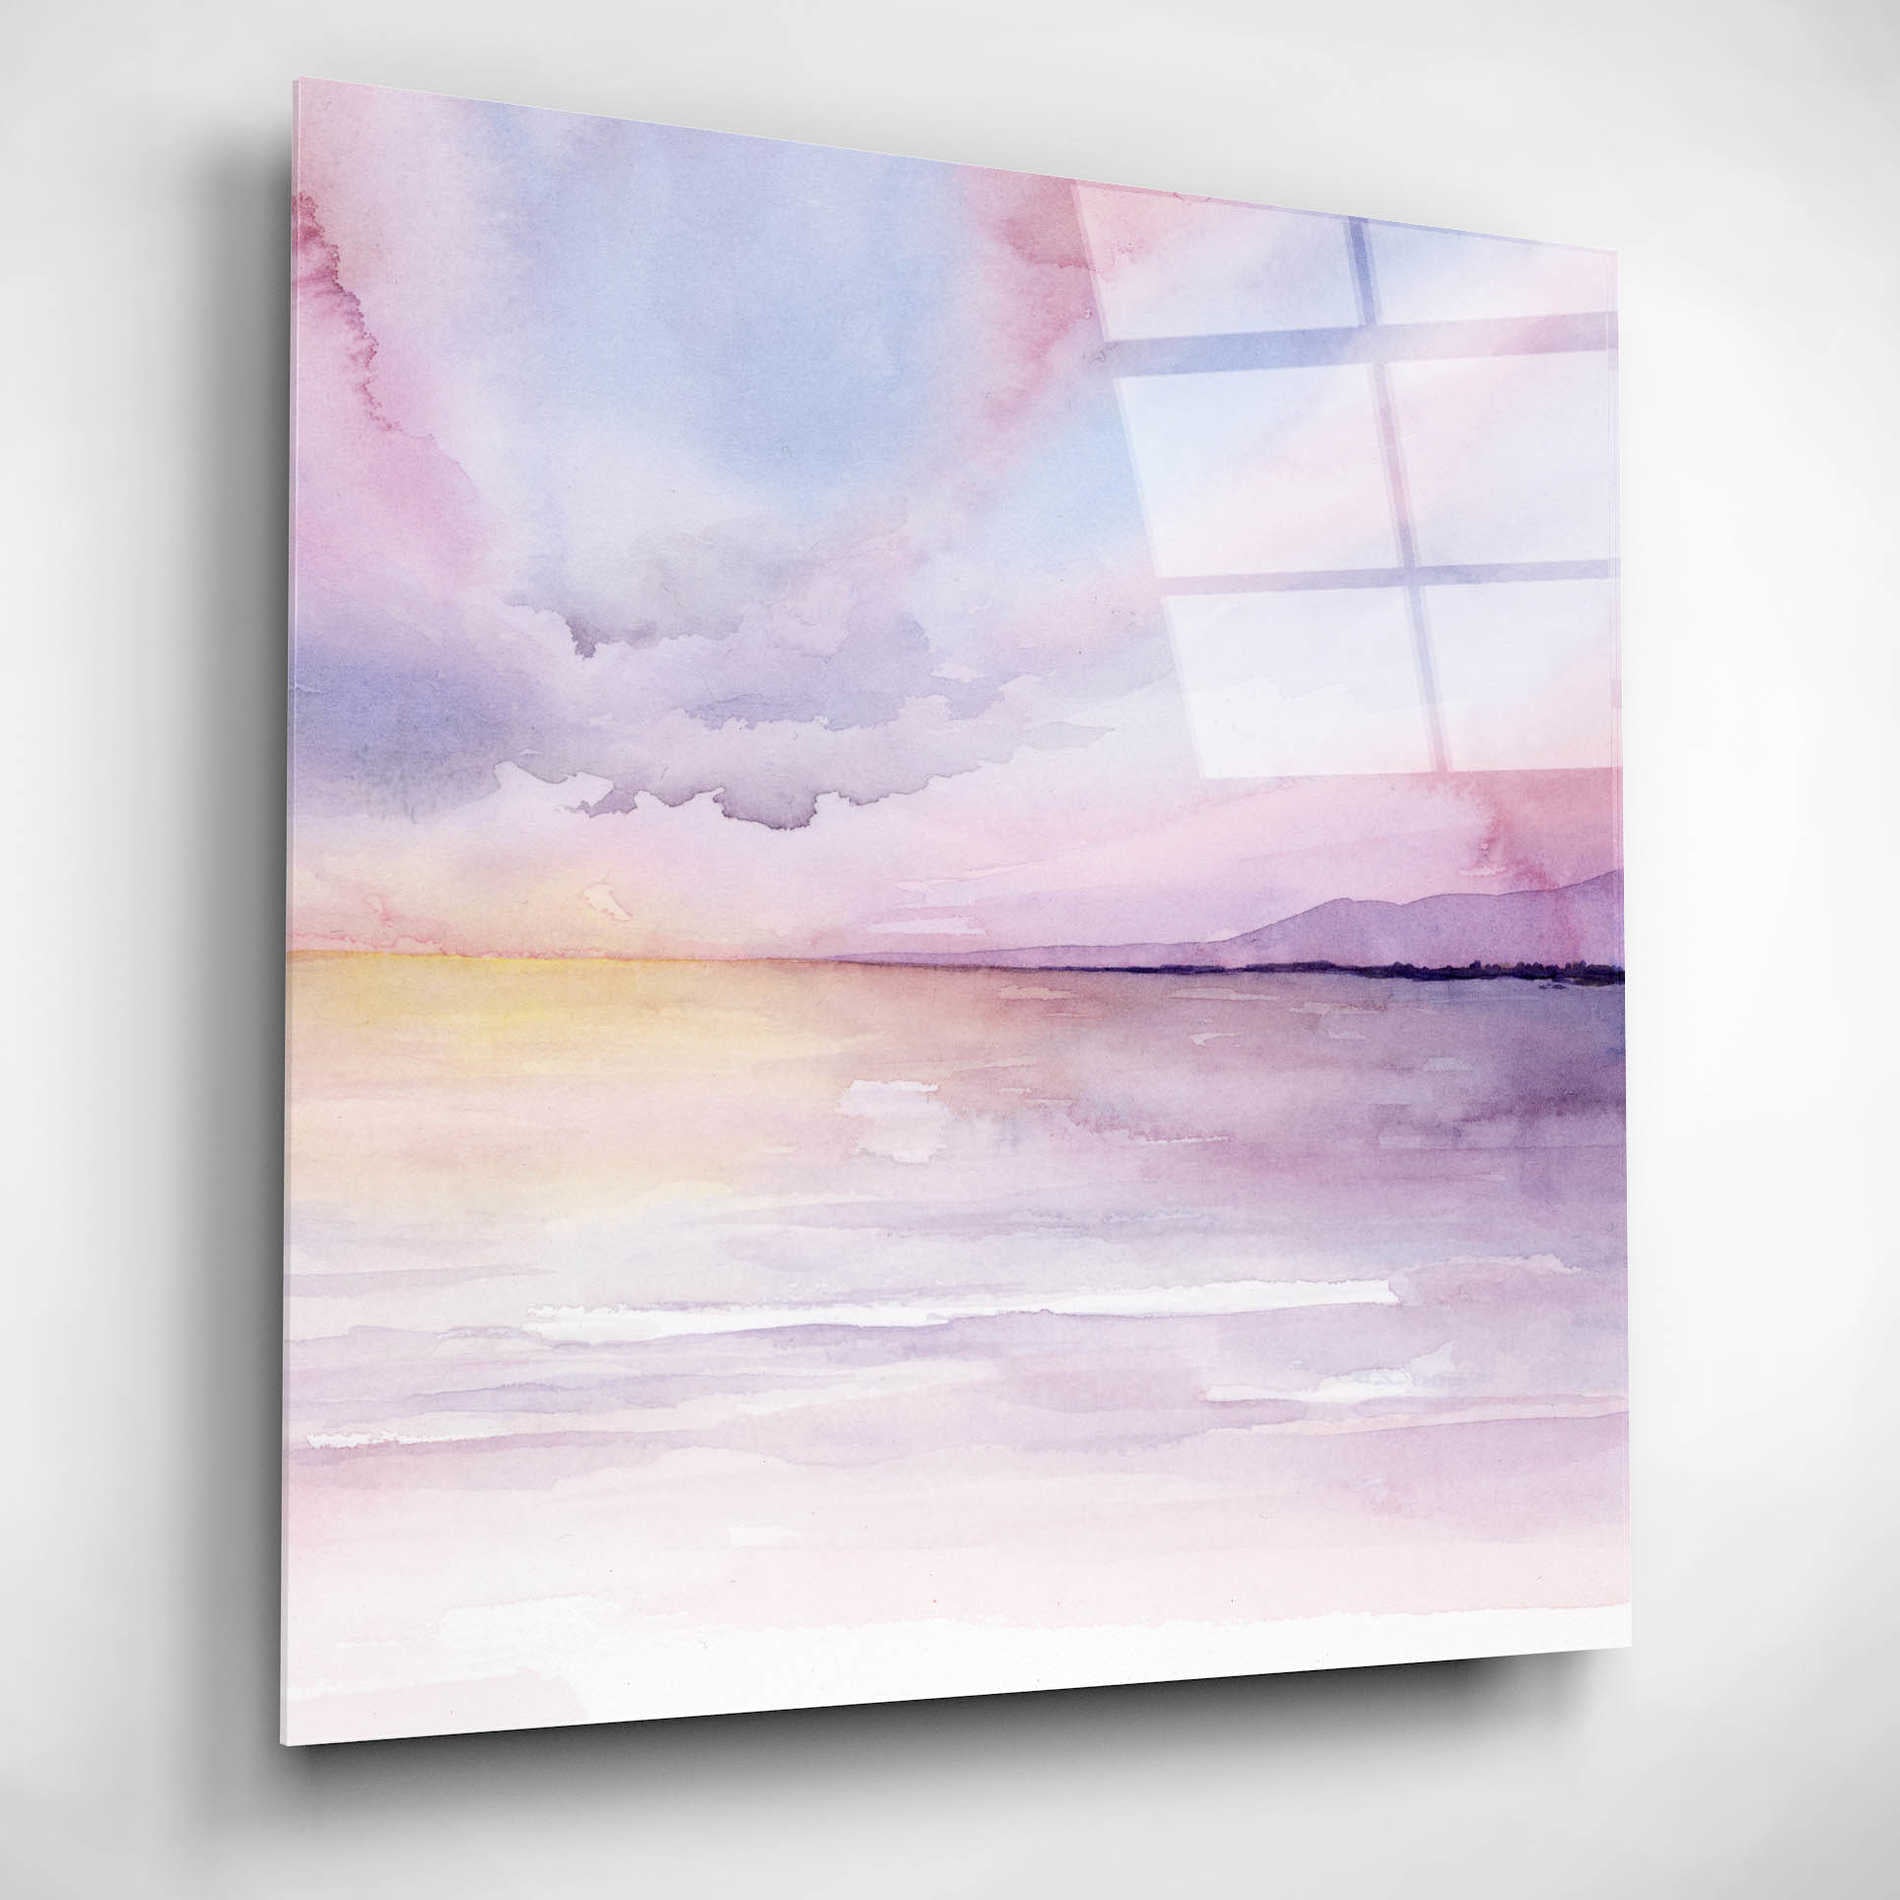 Epic Art 'Pale Sunset II' by Grace Popp, Acrylic Glass Wall Art,12x12